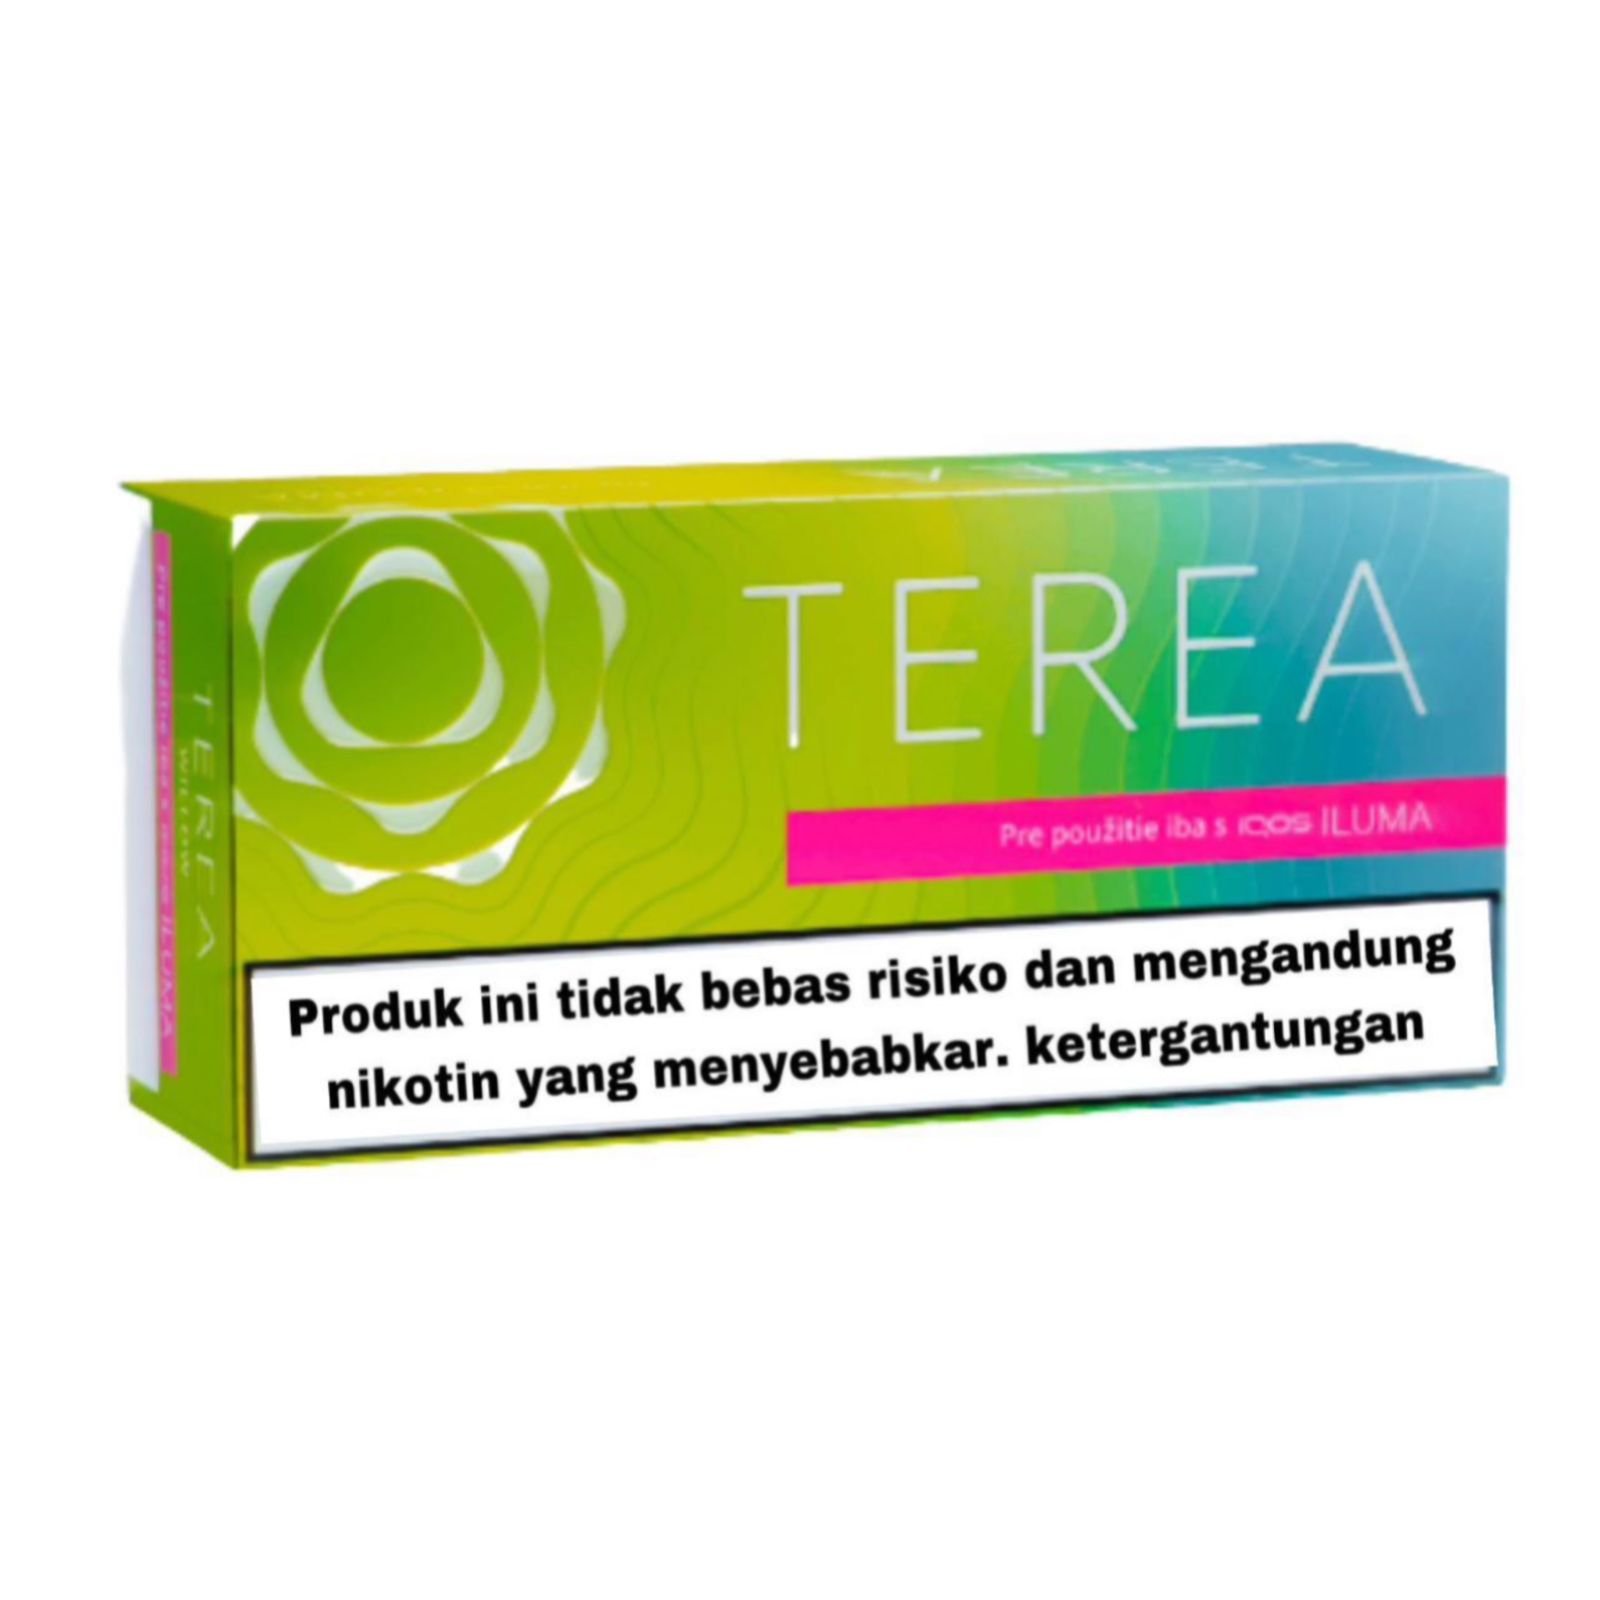 Купить стики iluma. Terea стики. Стики на айкос terea. Terea табак. Terea Bright Wave Indonesia.